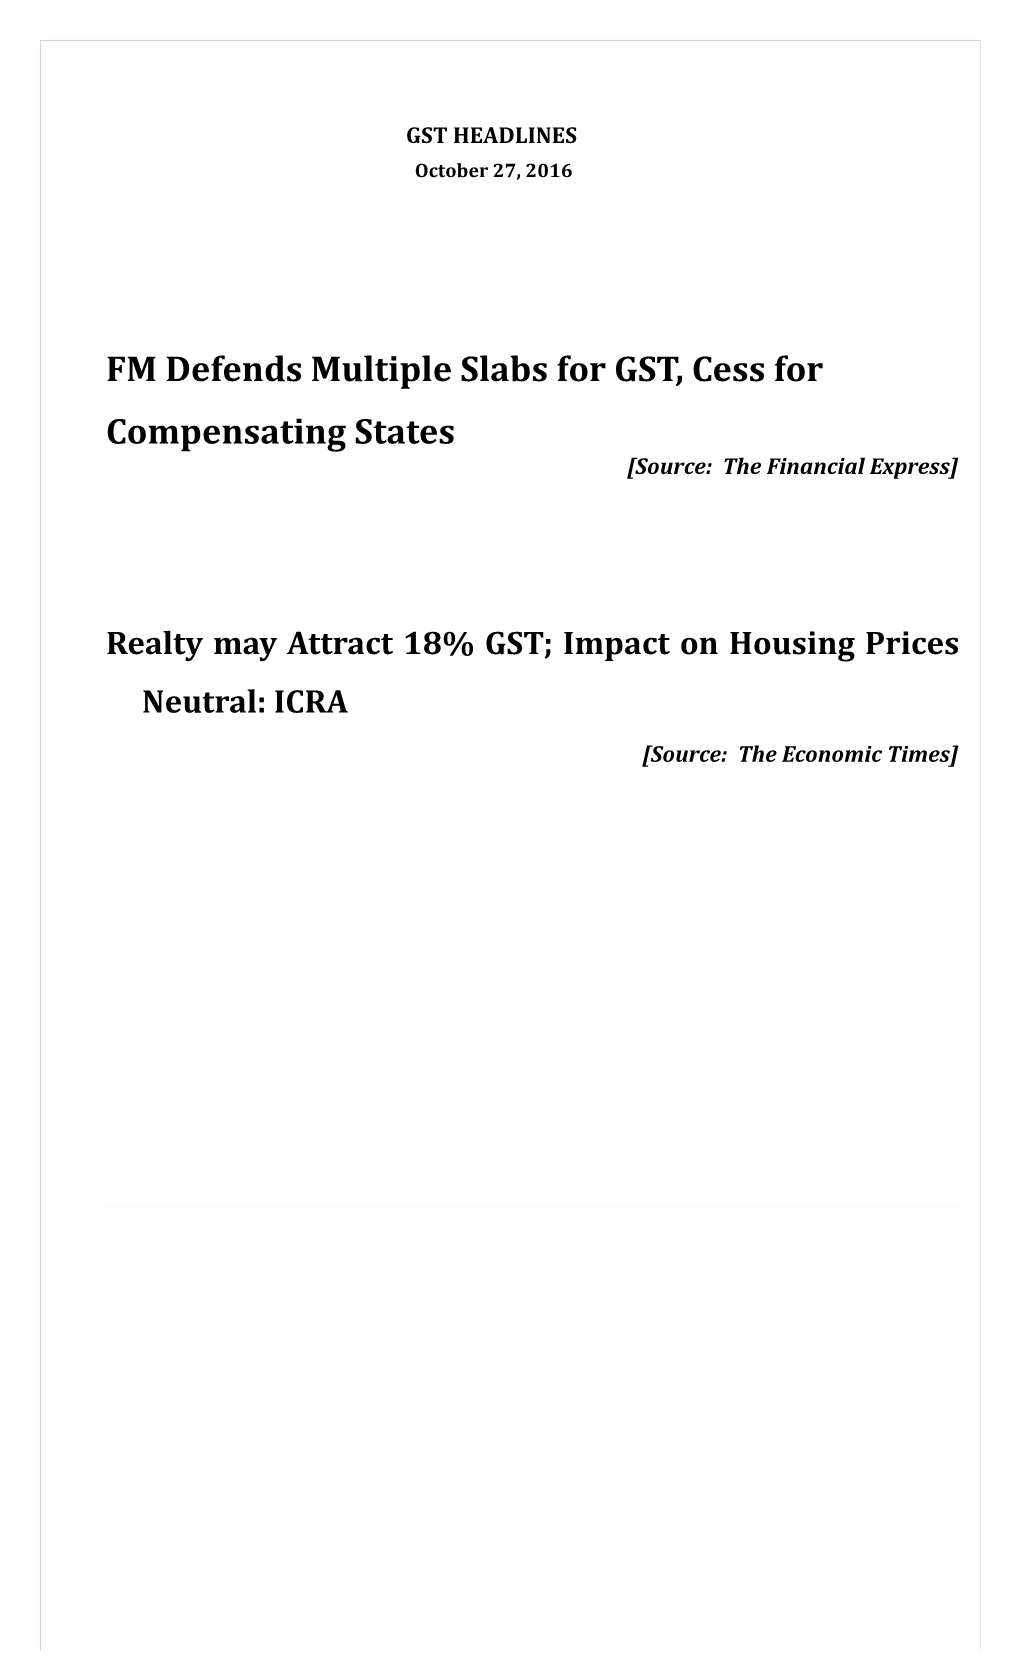 FM Defends Multiple Slabs for GST, Cess for Compensatingstates